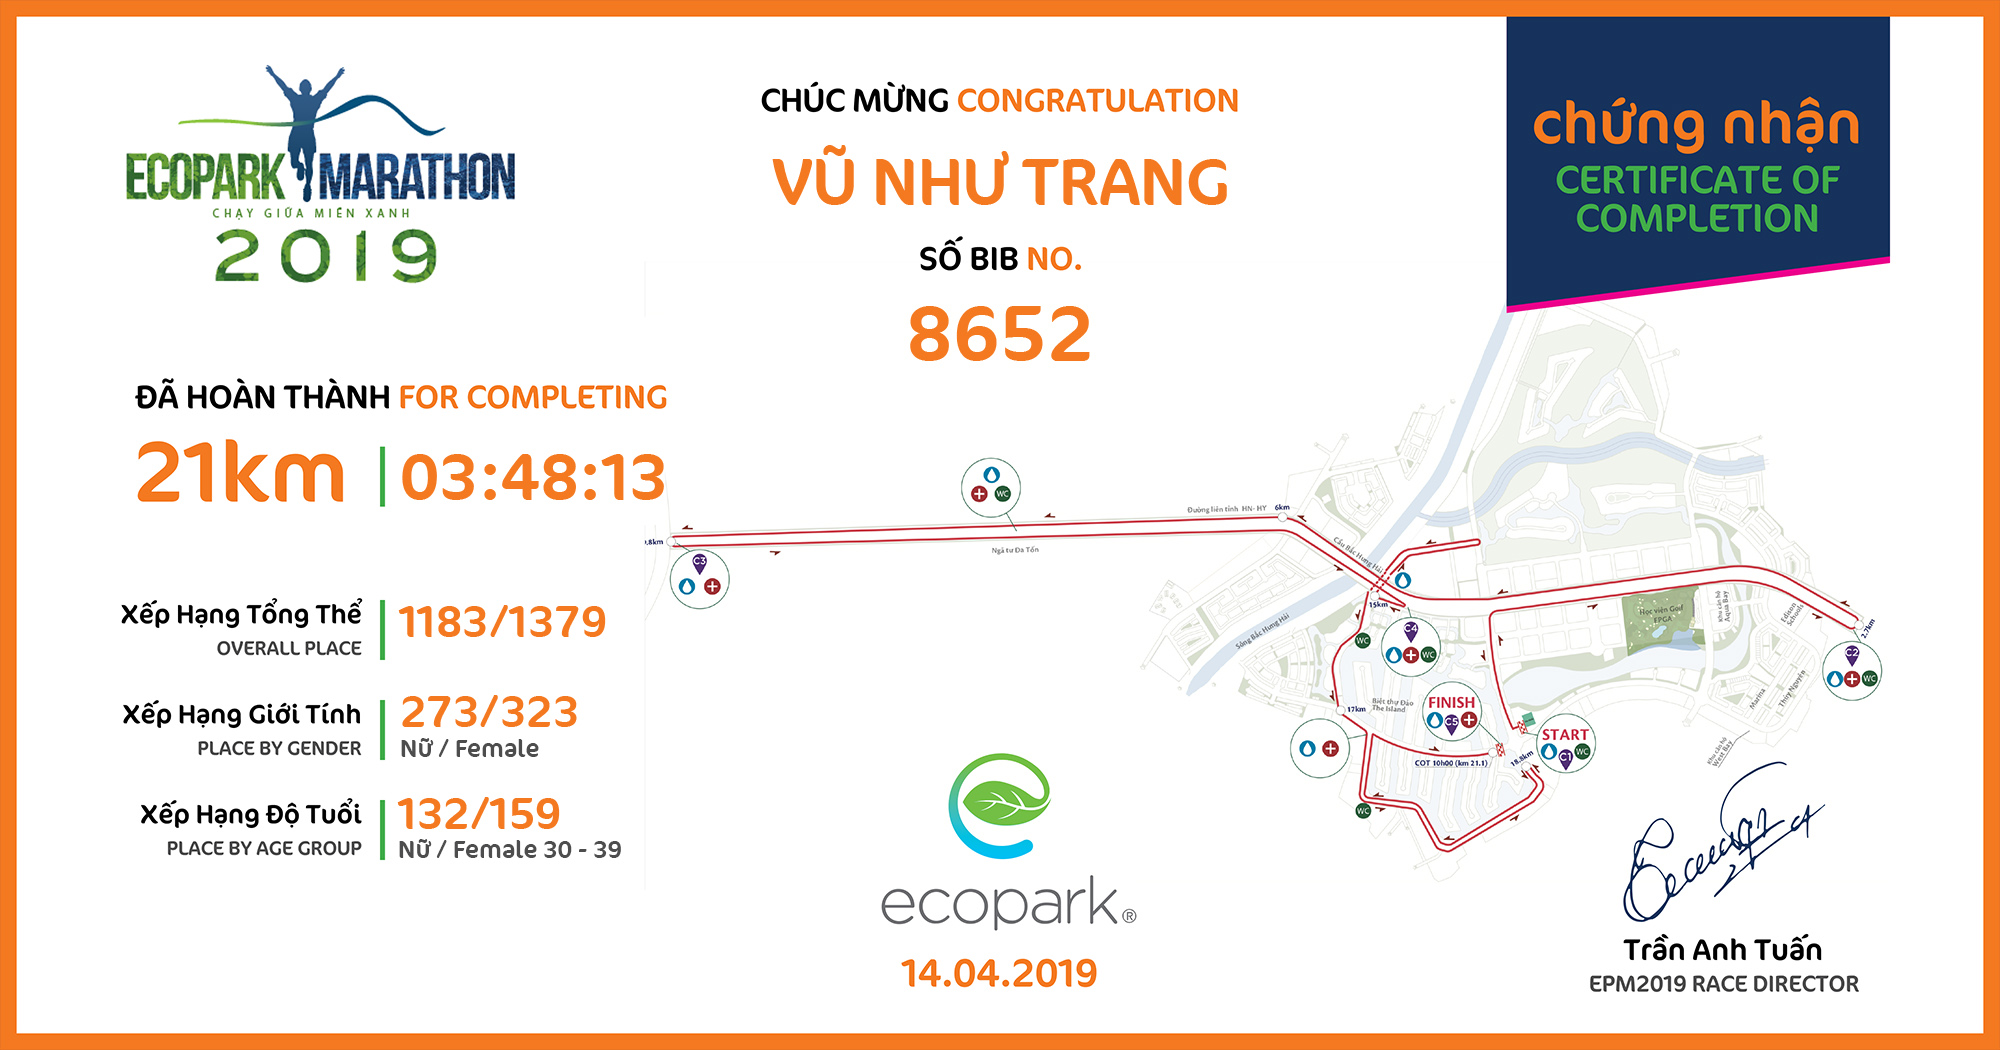 8652 - Vũ Như Trang